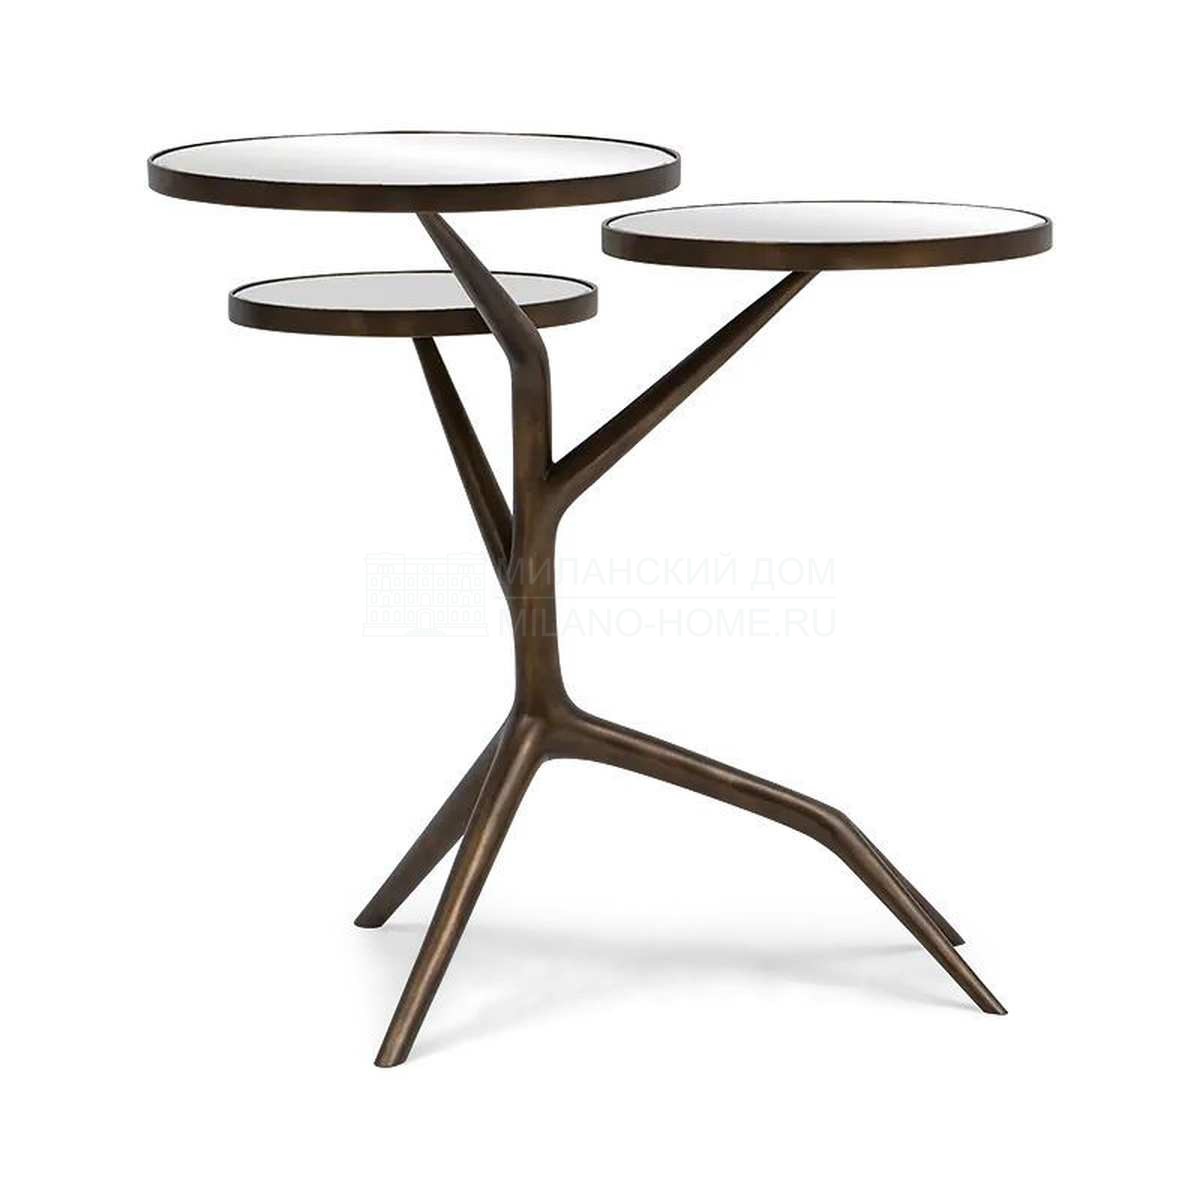 Кофейный столик Orion side table из США фабрики CHRISTOPHER GUY